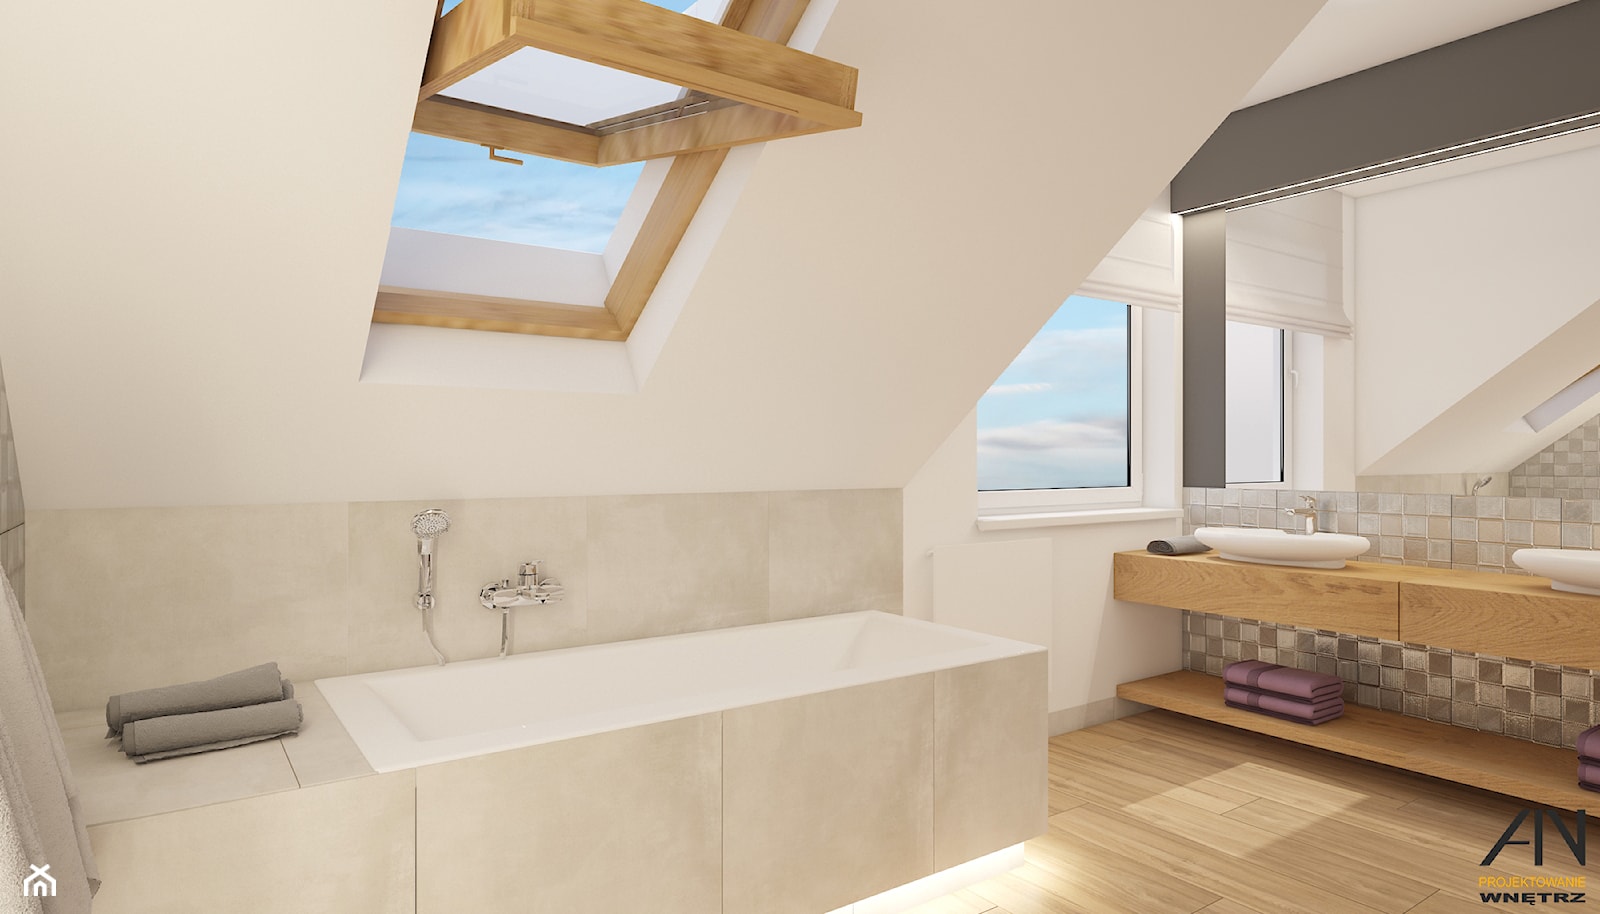 łazienka z drewnem - zdjęcie od AIN projektowanie wnętrz - Homebook